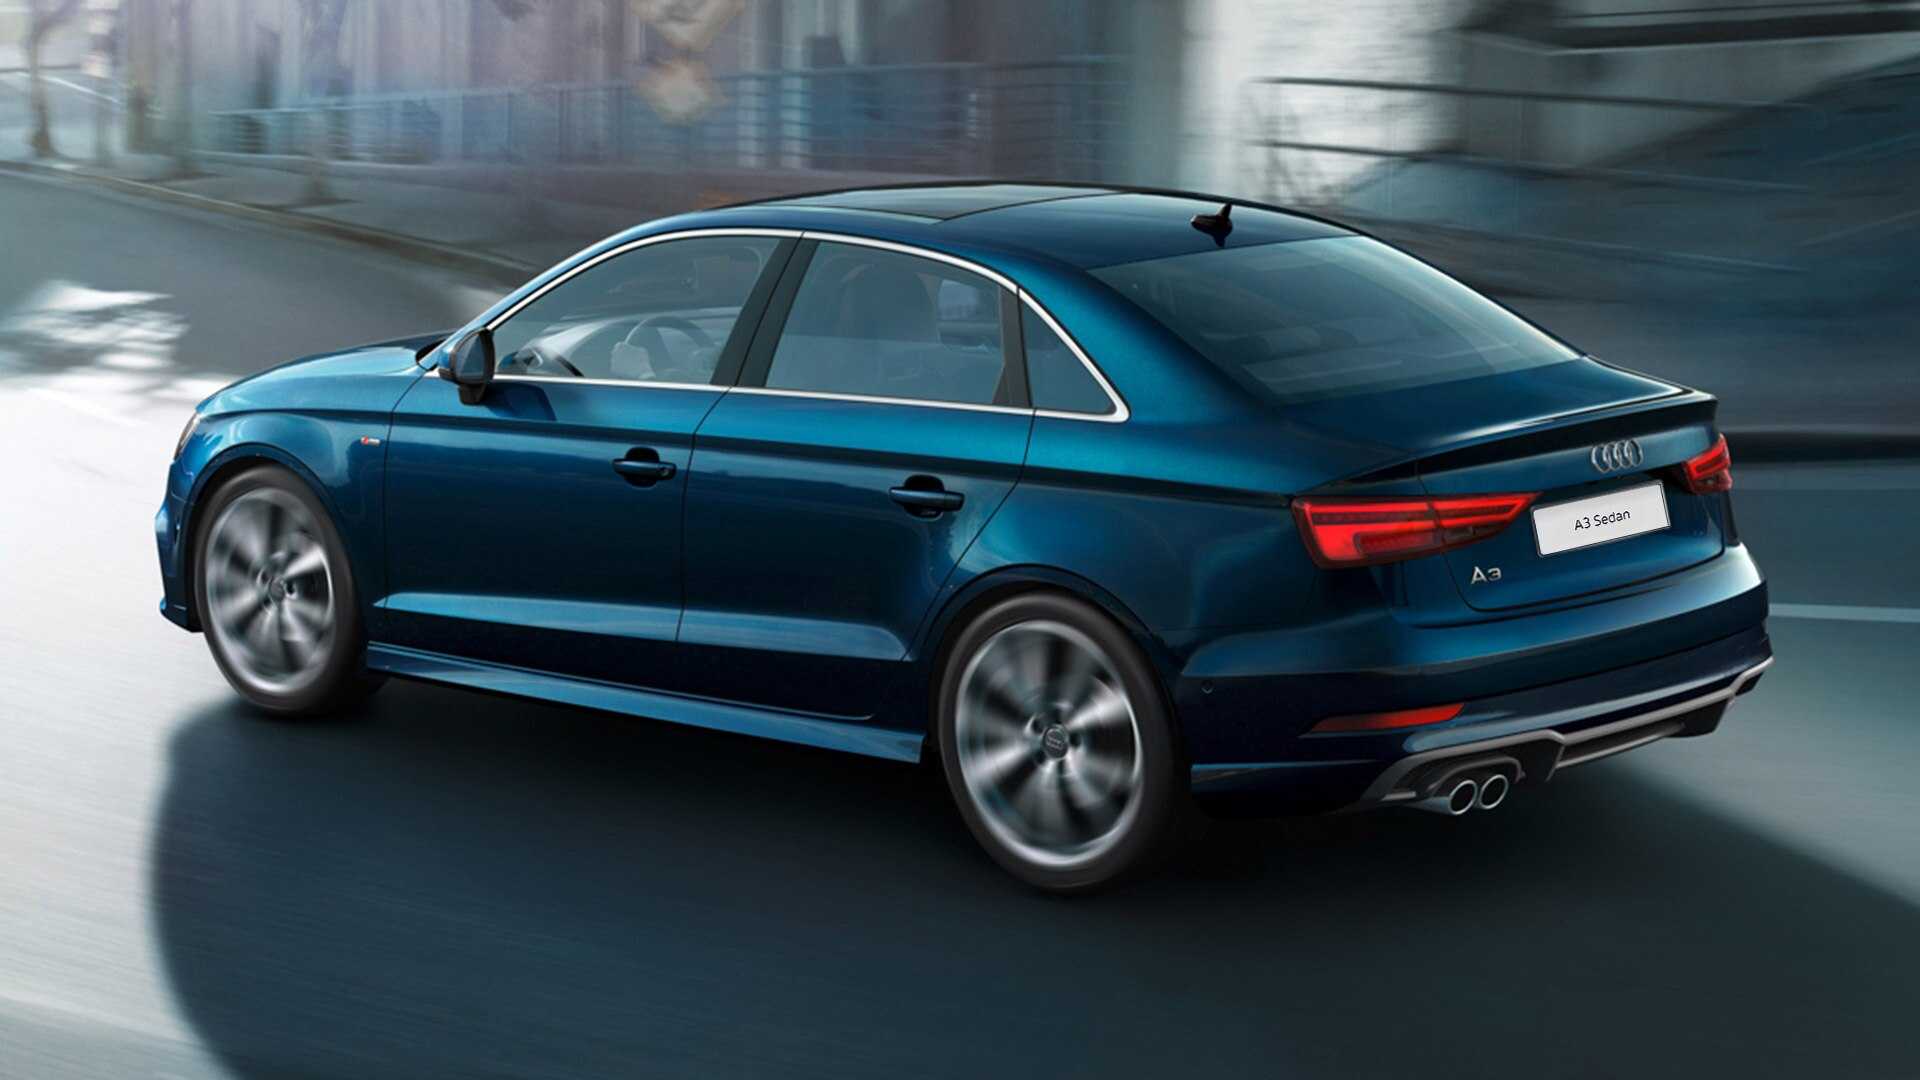 Audi a3 2020 уже в россии! фото, цены, комплектации, дата выхода, sportback, седан